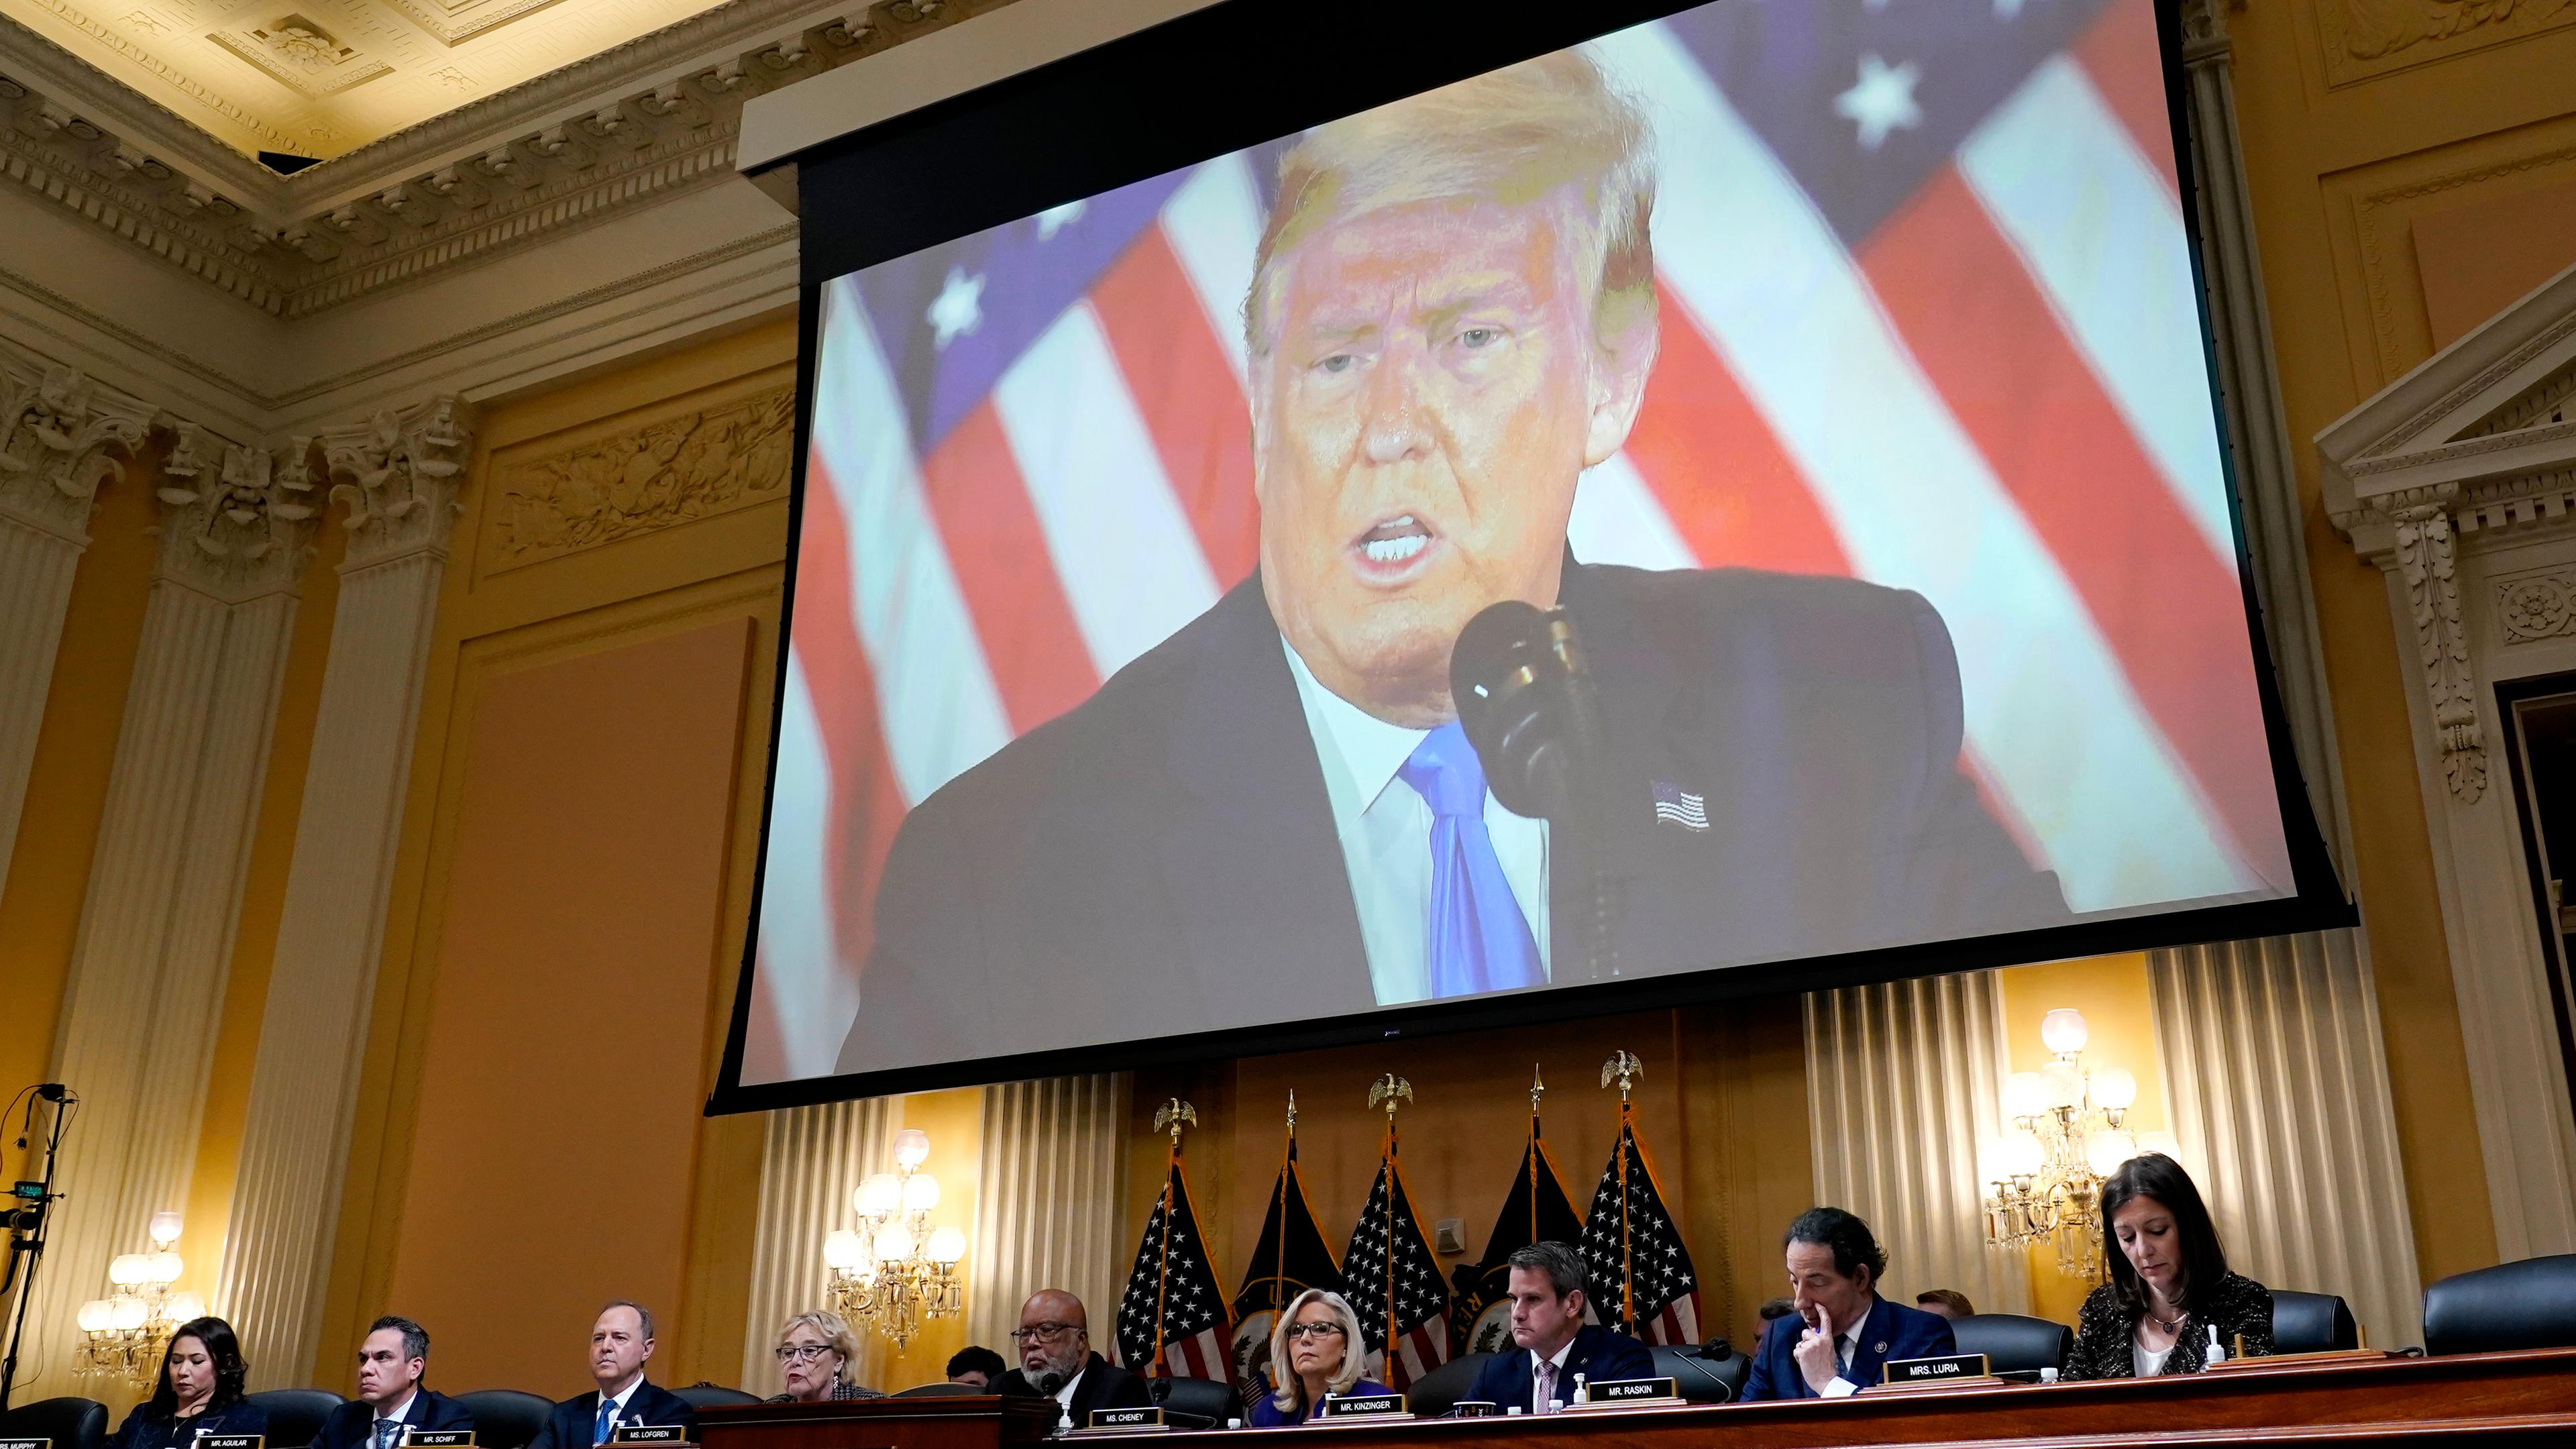 Ein Video des ehemaligen US-Präsidenten Trump wird auf einer Leinwand gezeigt, während der Untersuchungsausschuss zum Sturm auf das Kapitol tagt.